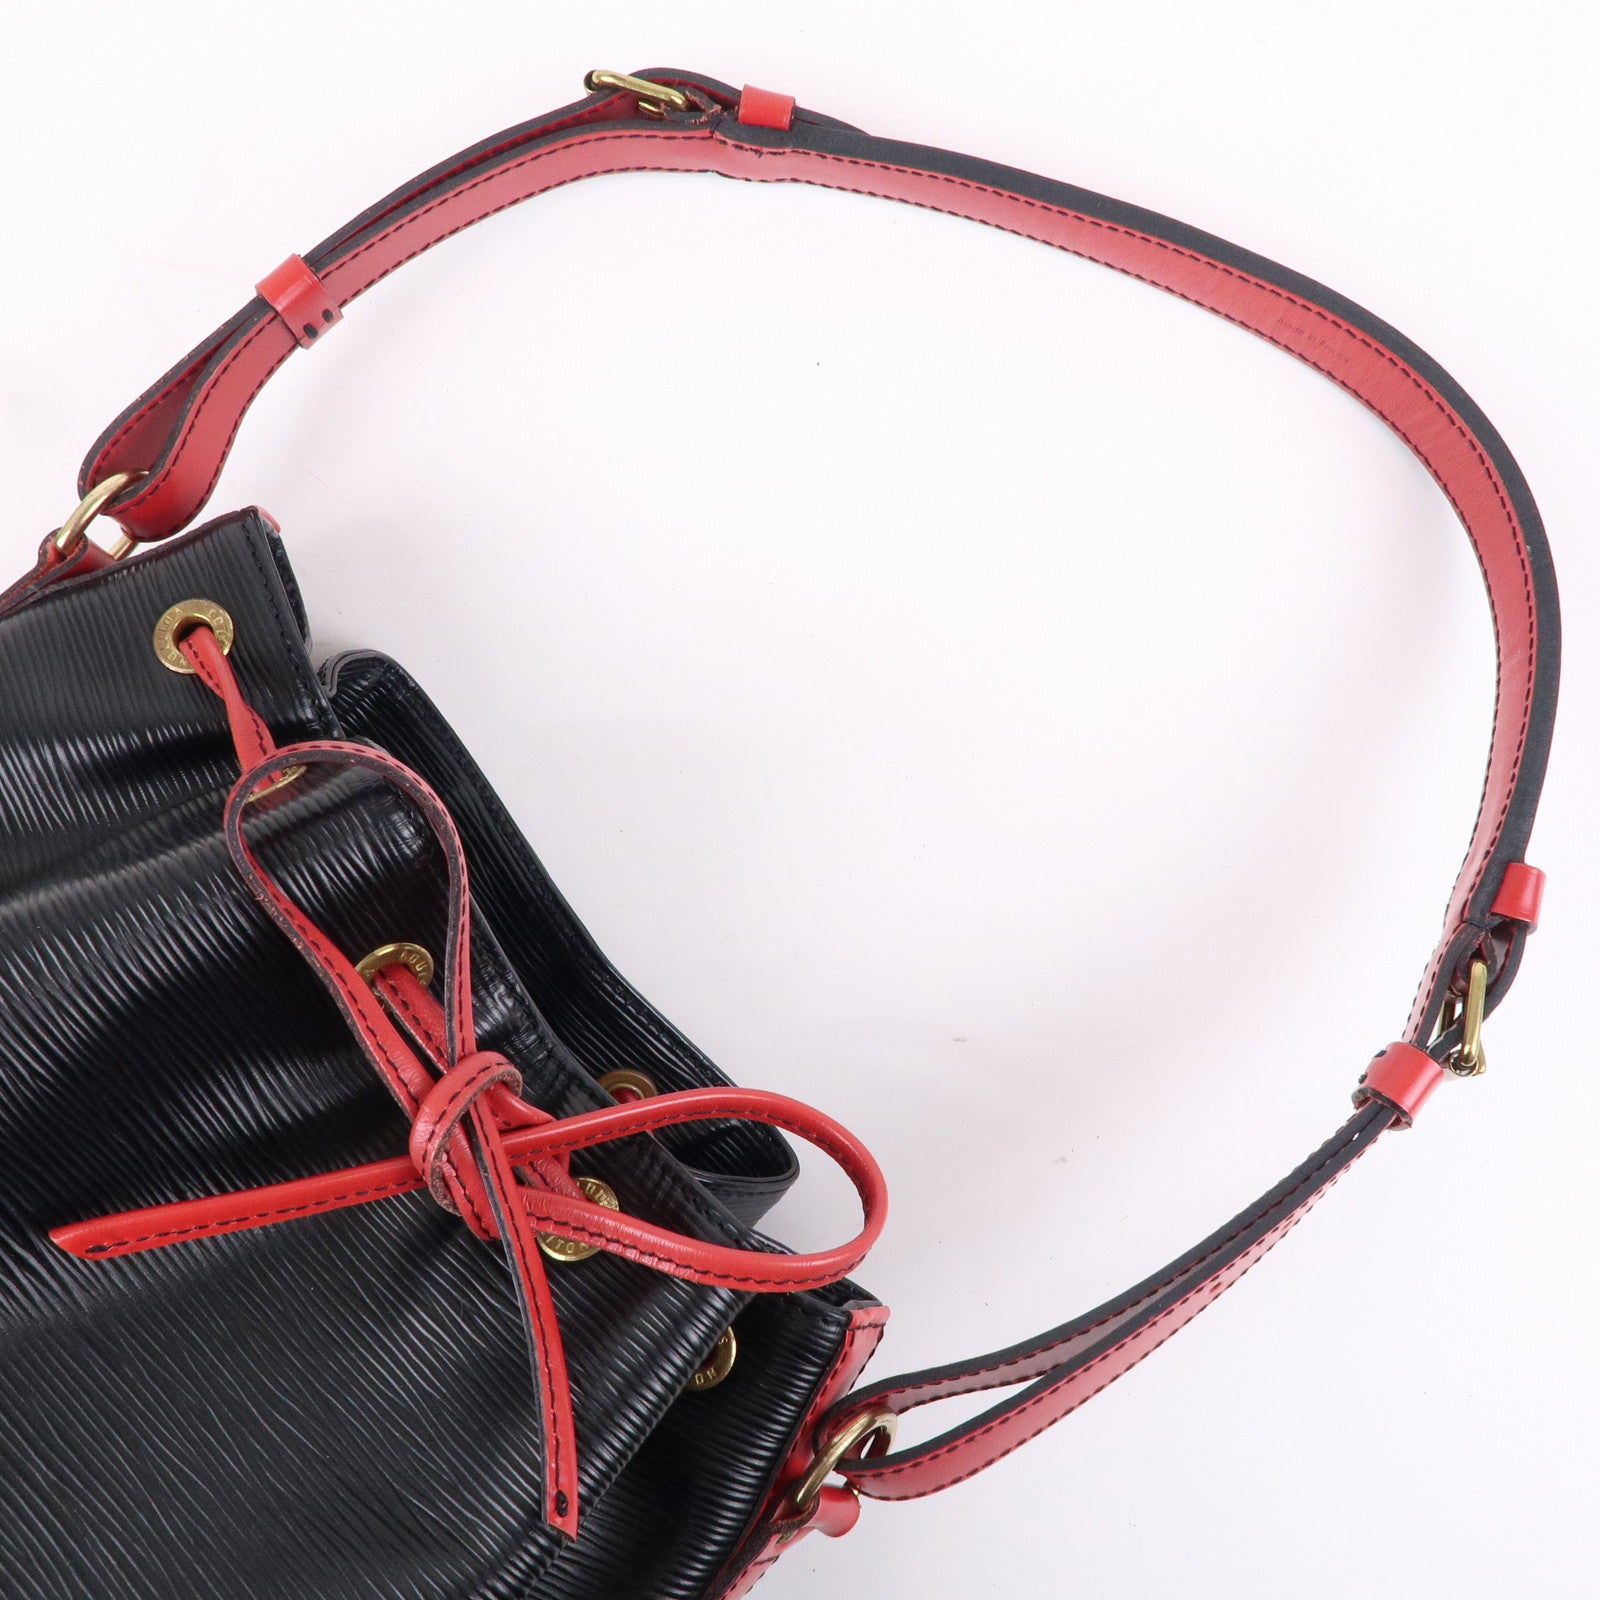 Louis-Vuitton-Epi-Noe-Shoulder-Bag-Noir-Castilian-Red-M44017 – dct